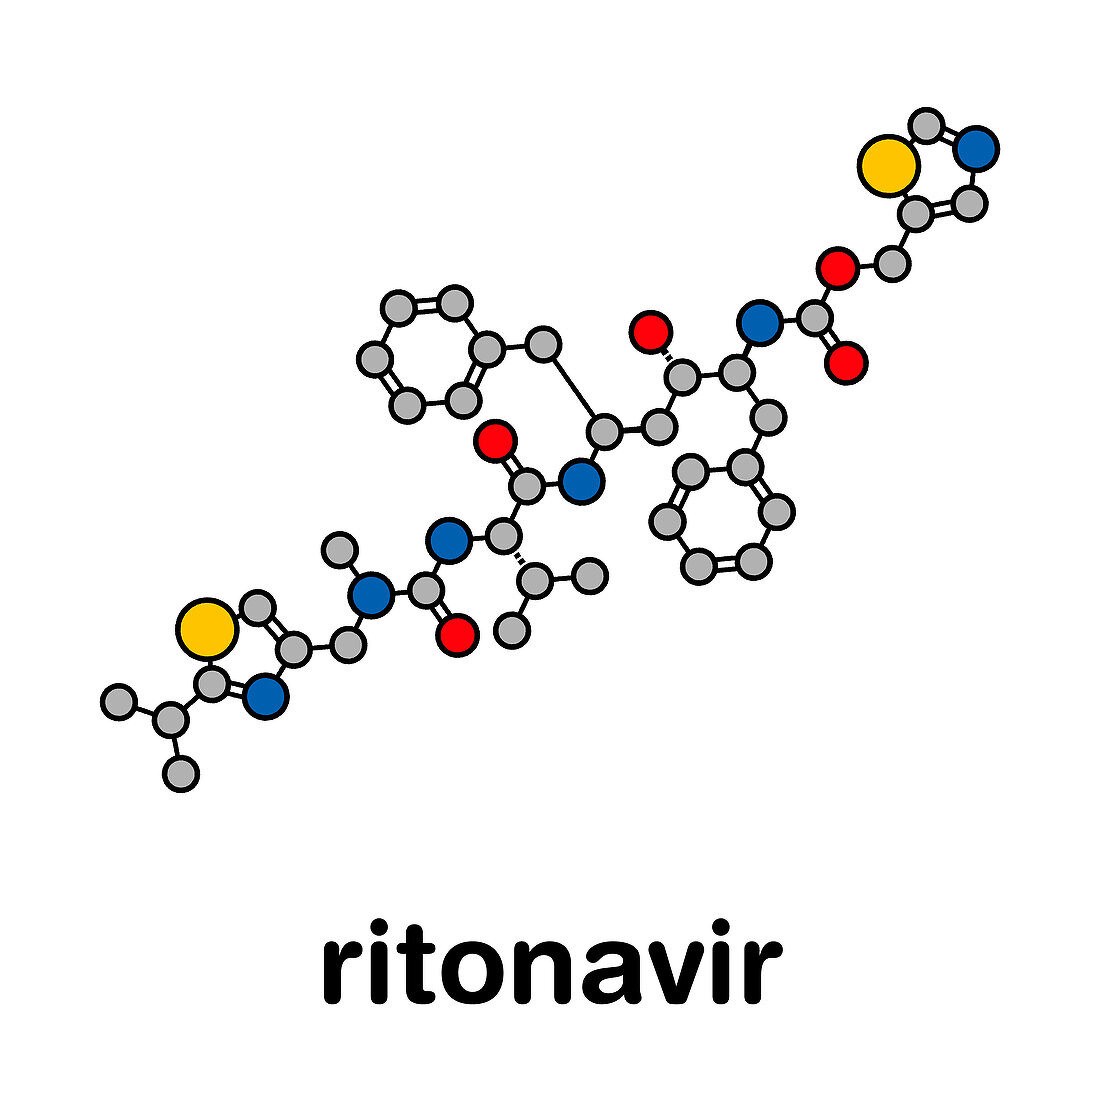 Ritonavir HIV drug, molecular model